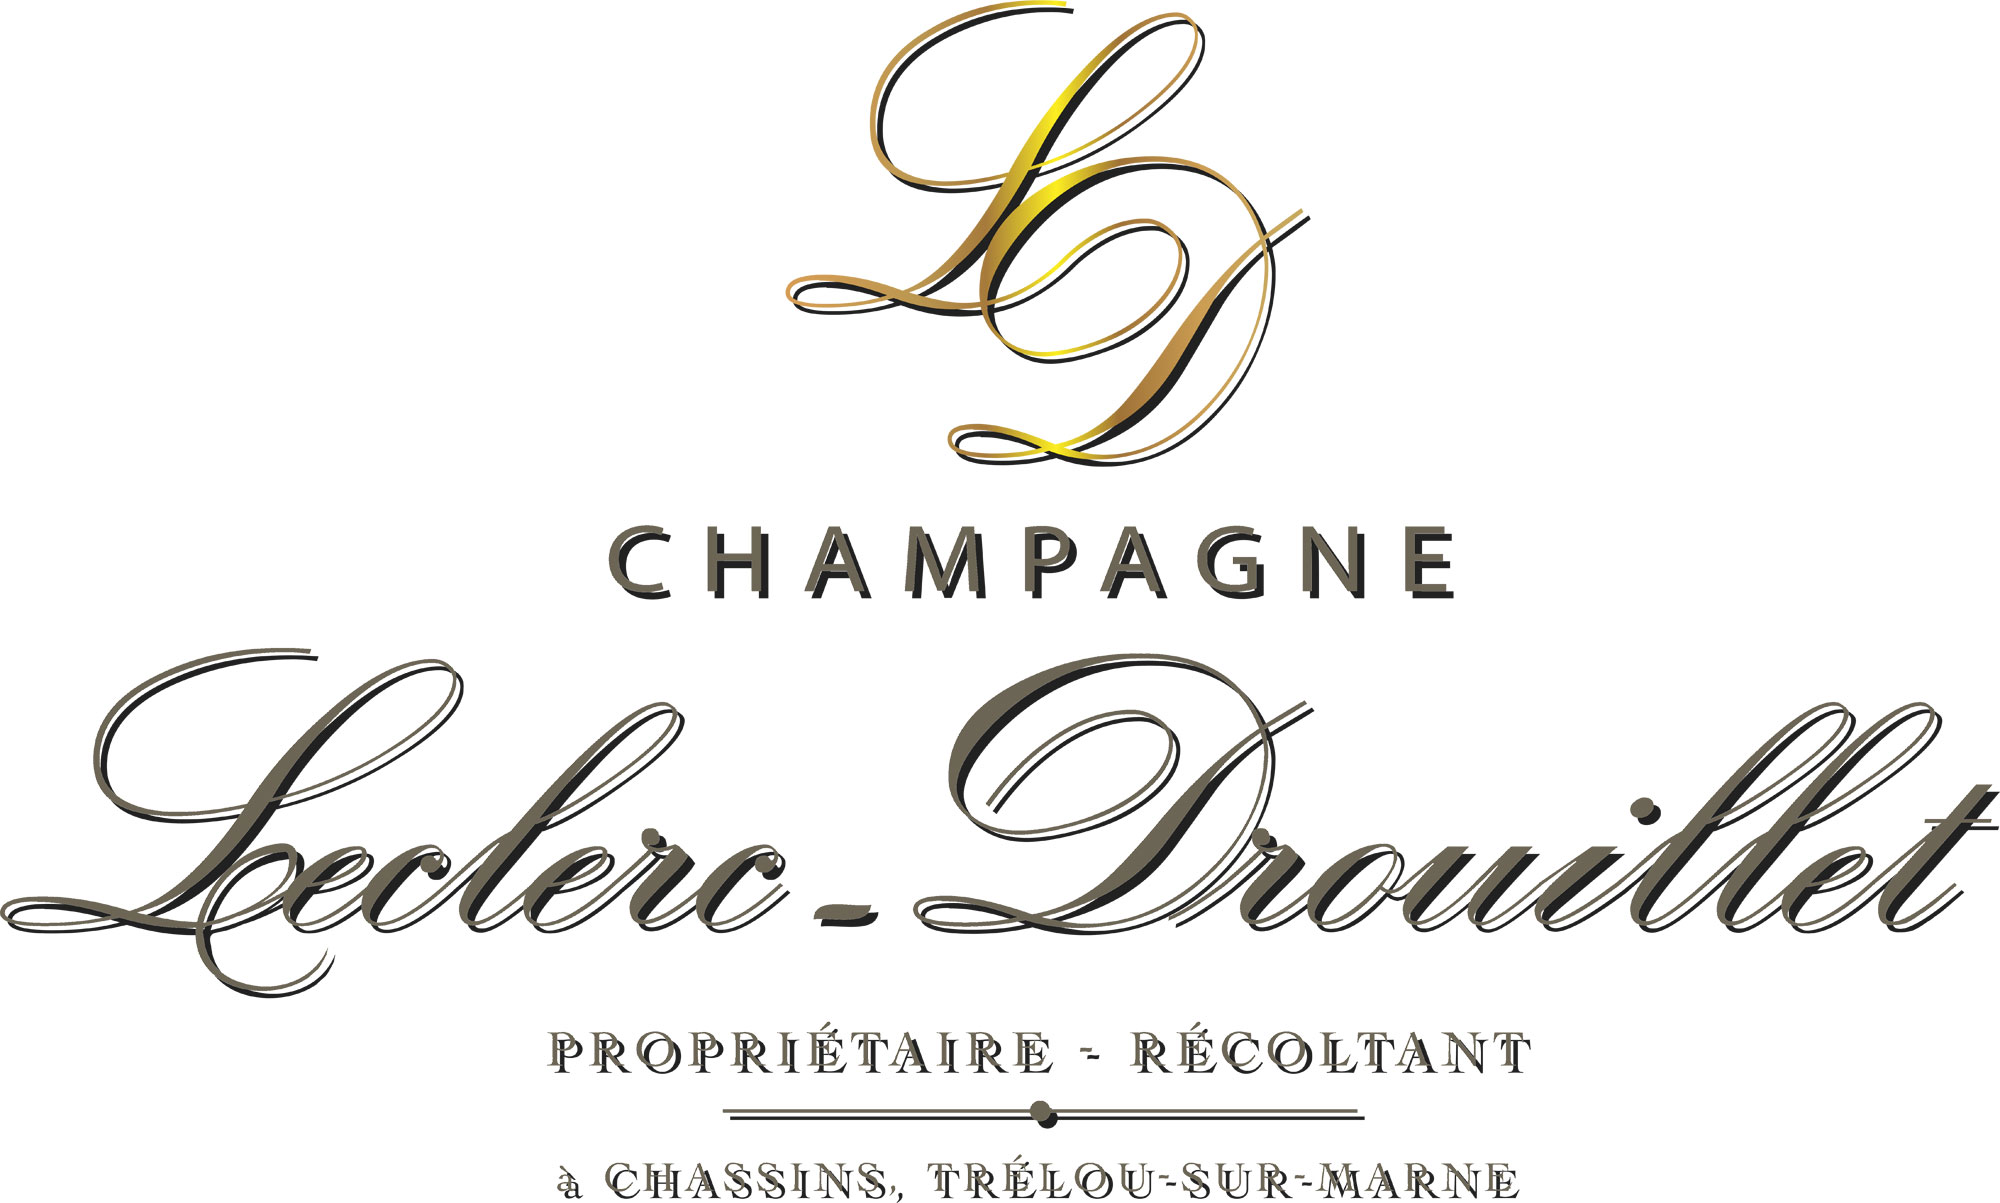 Champagne Leclerc-Drouillet